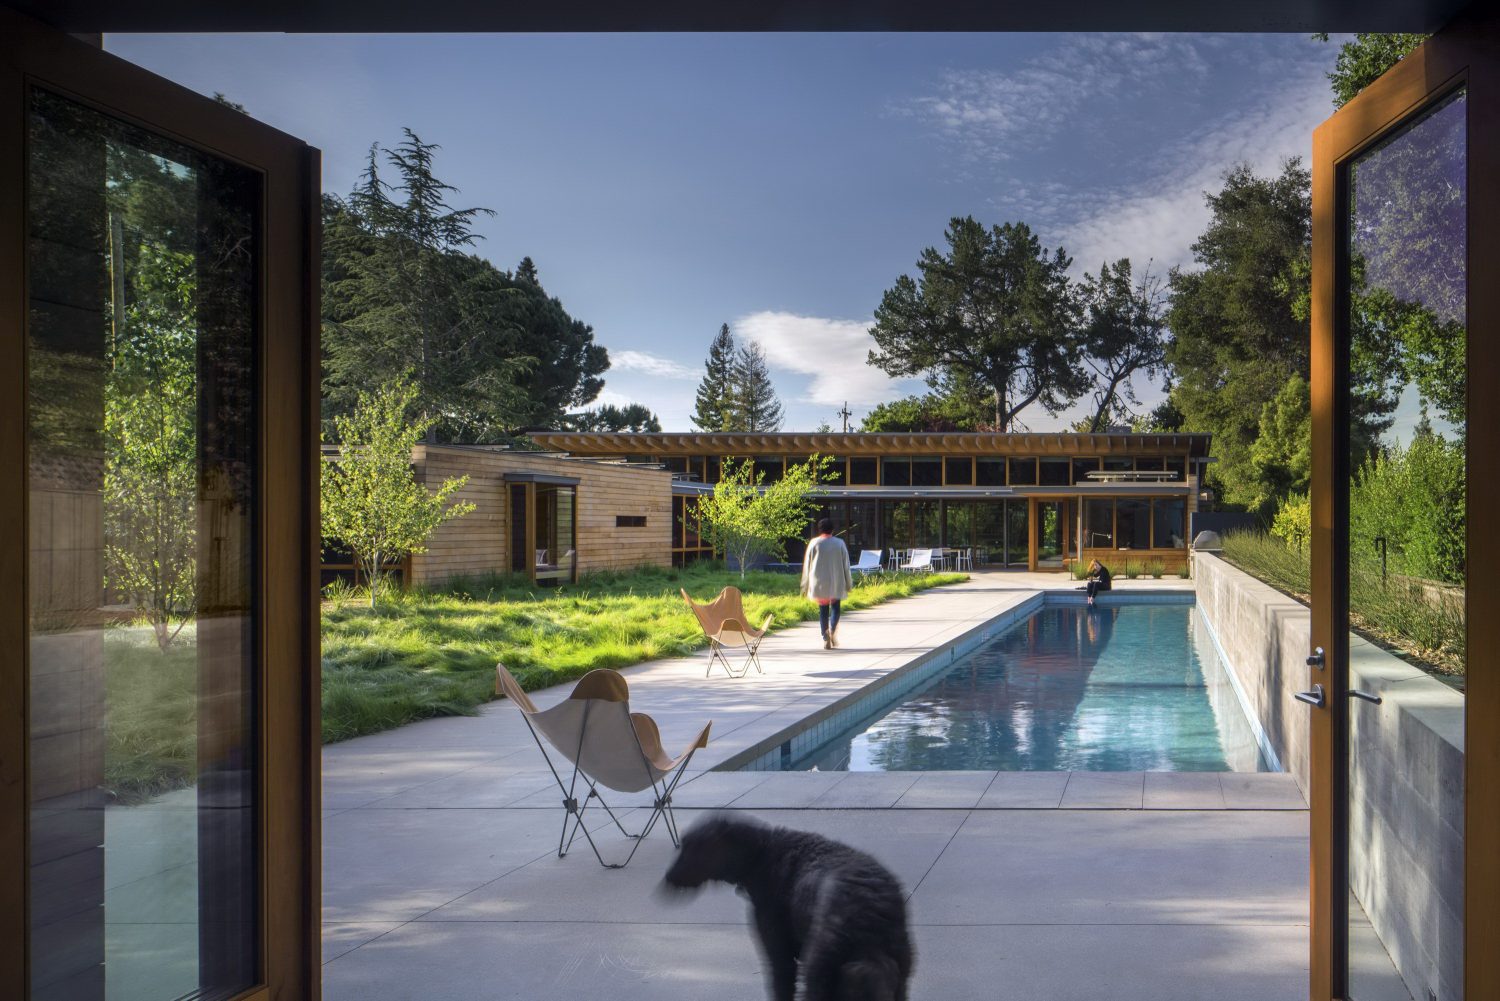 Los Altos Residence by Bohlin Cywinski Jackson